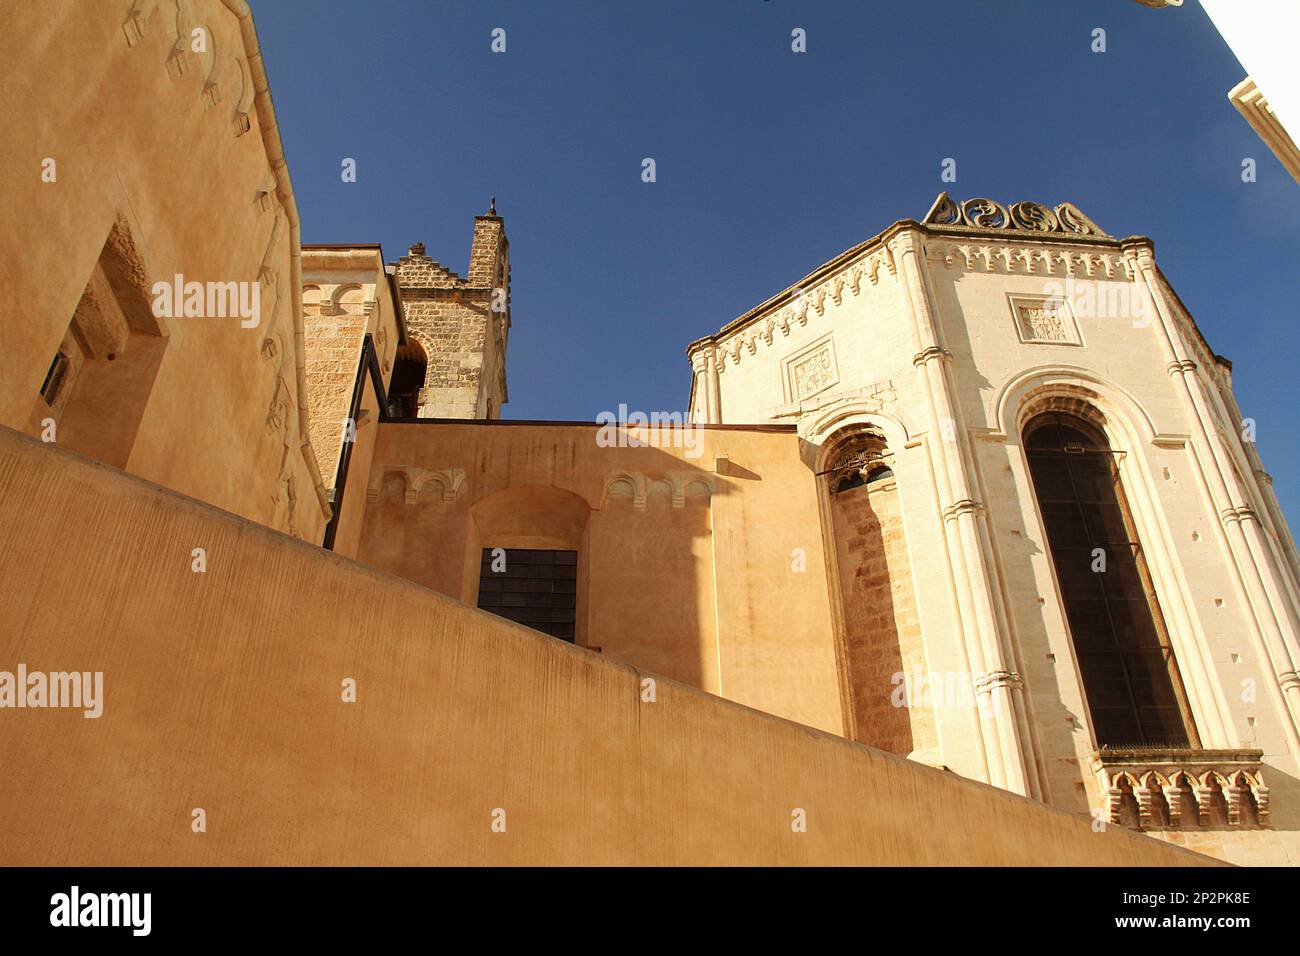 Galatina, Italy. Exterior walls and tower of the 14th century Santa Caterina d'Alessandria Catholic Church. Stock Photo